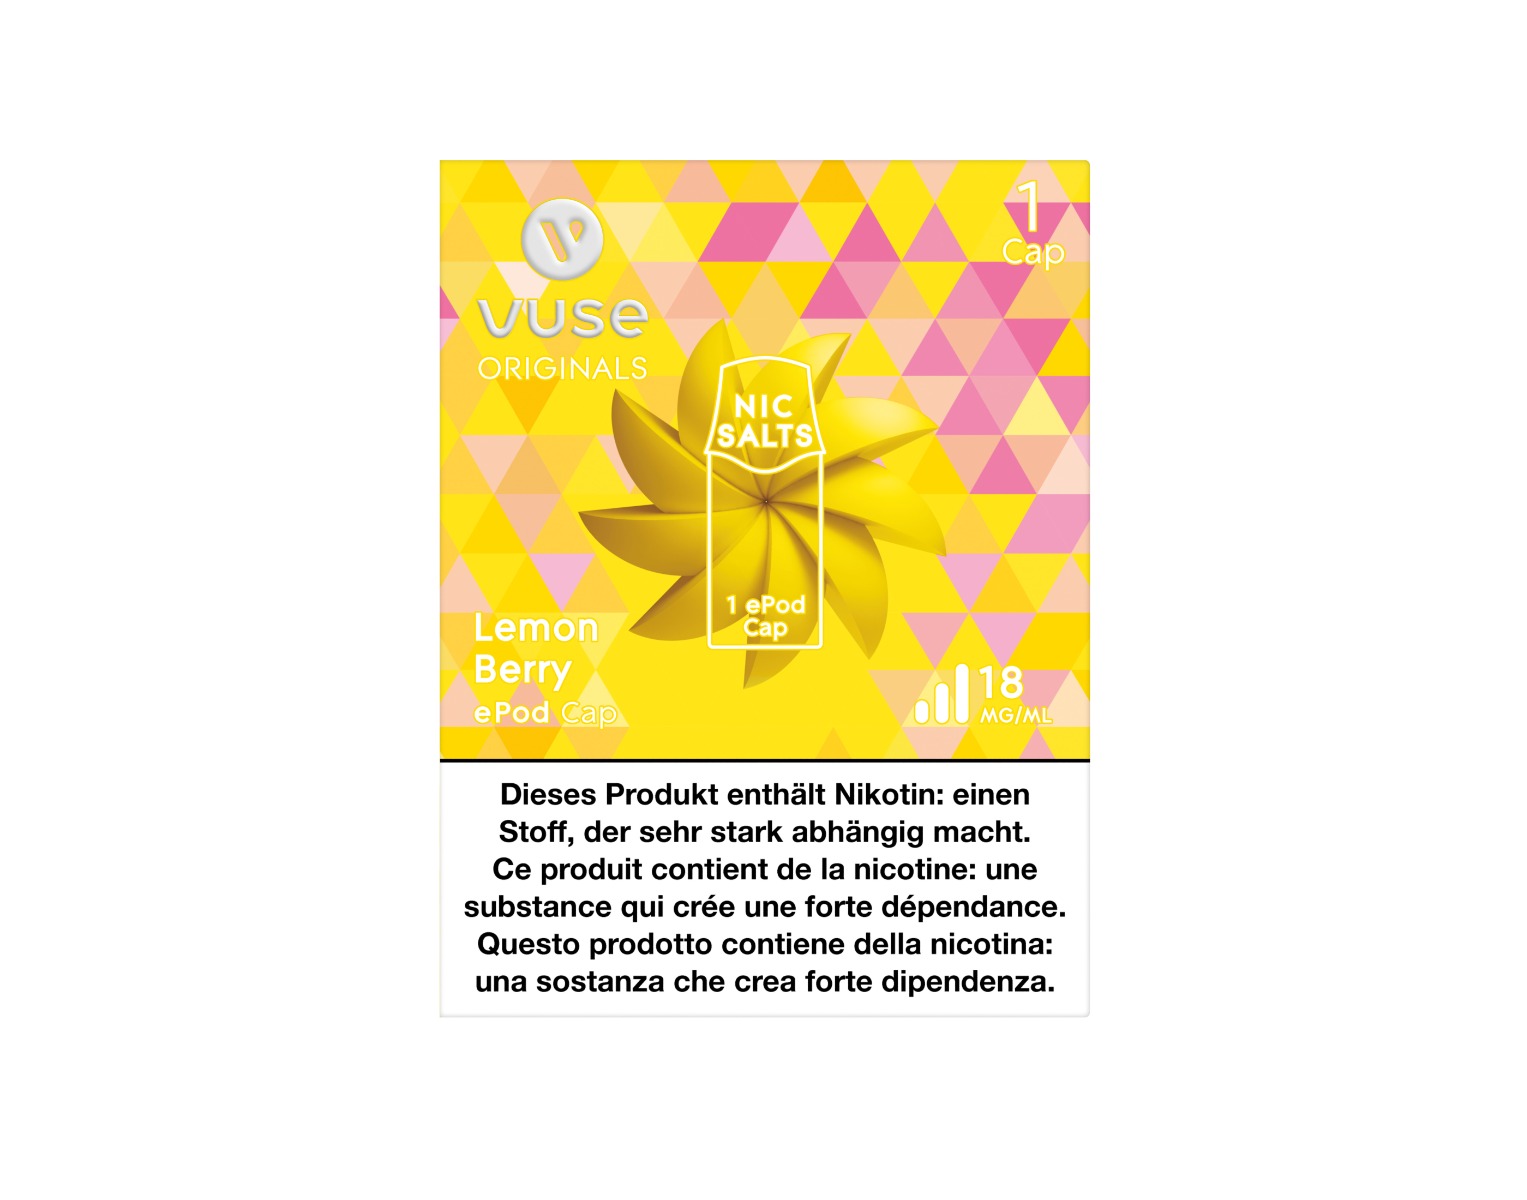 L'emballage de la Cap de e-liquide saveur Lemon Berry pour e-cigarette ePod